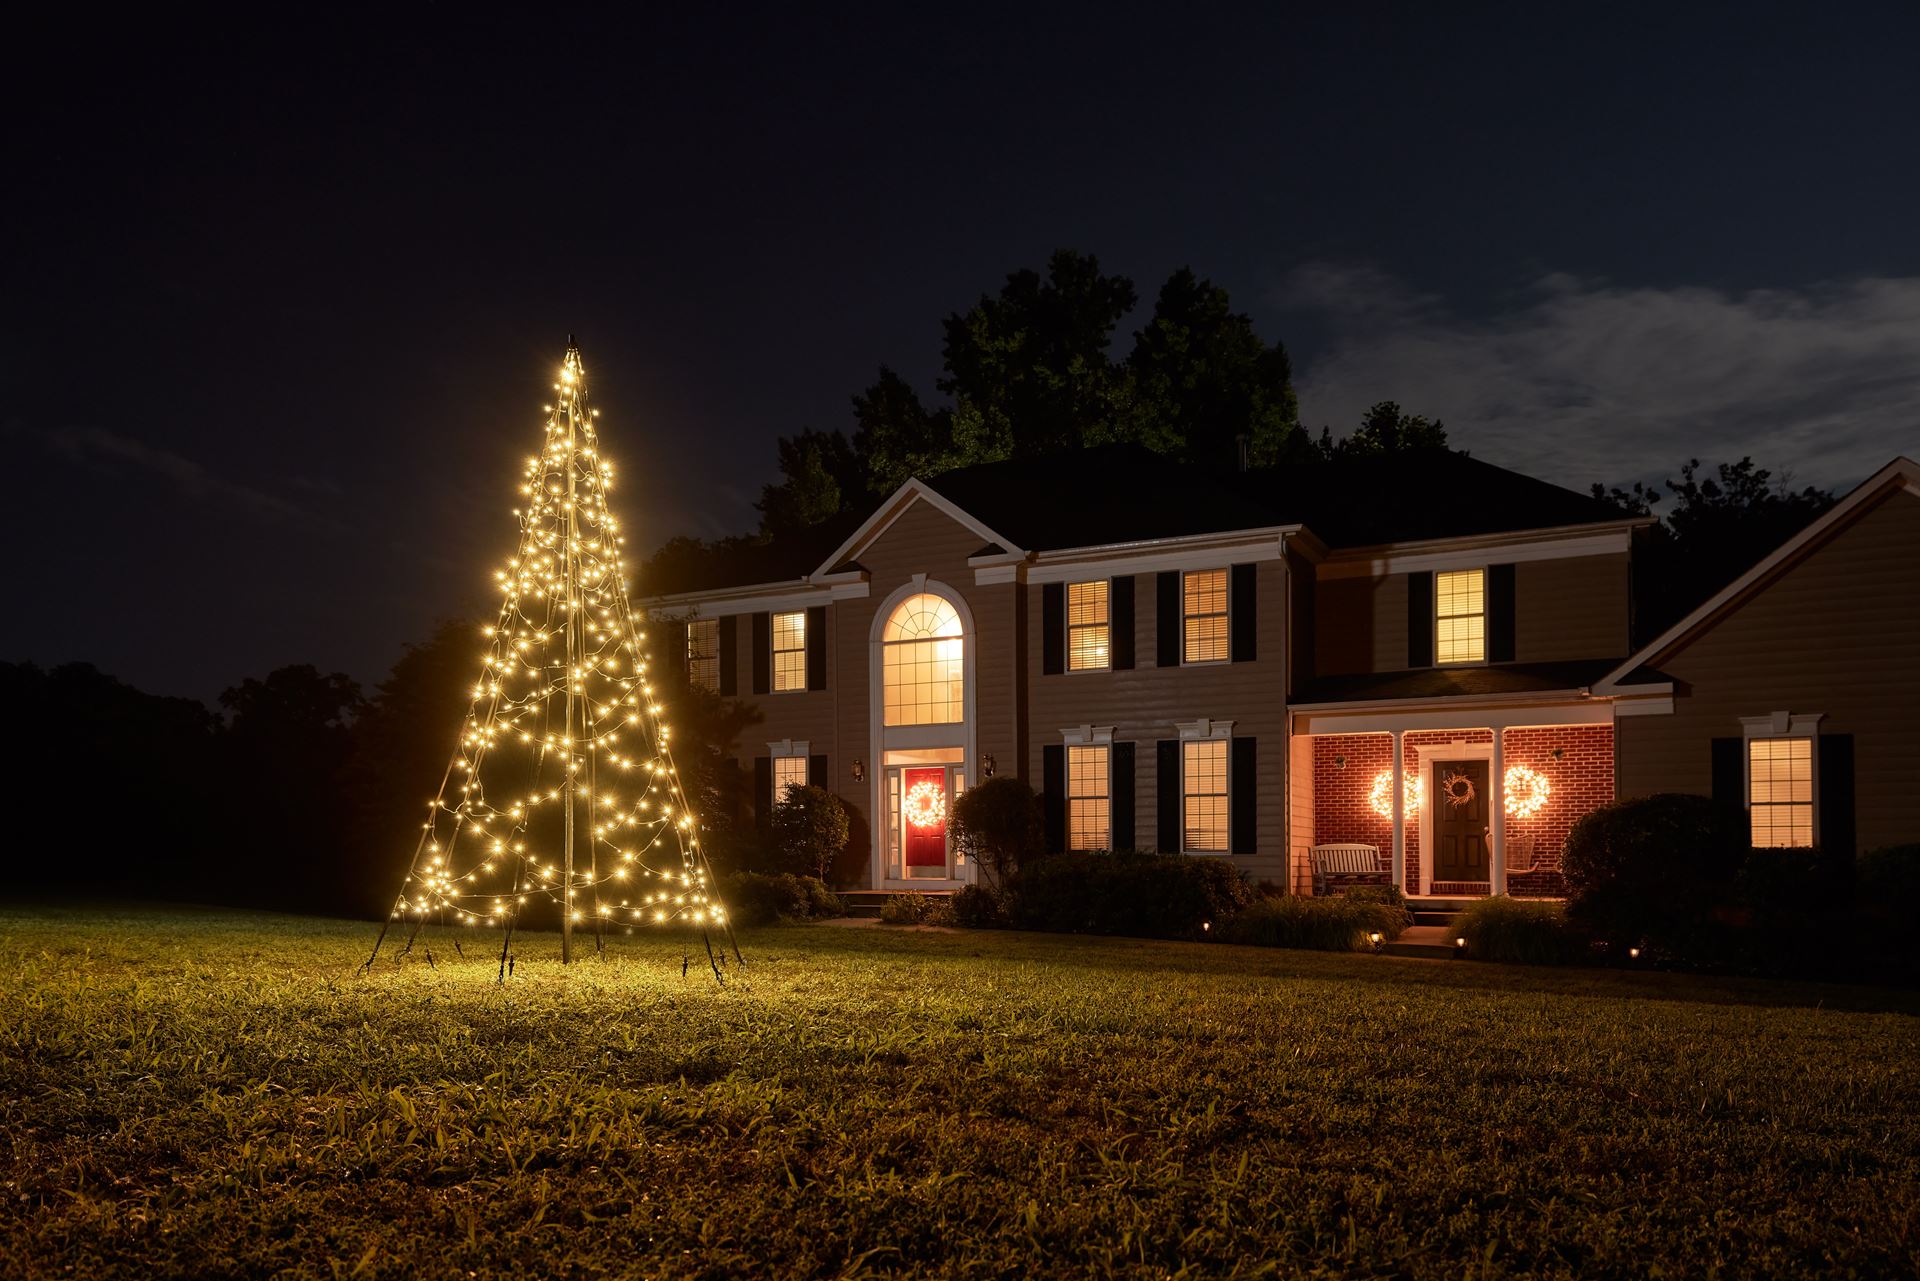 Fairybell-kerstverlichting-kerstboom-buiten-met-vlaggenmast-300CM-hoog-360-LED-lampjes-in-warmwitte-